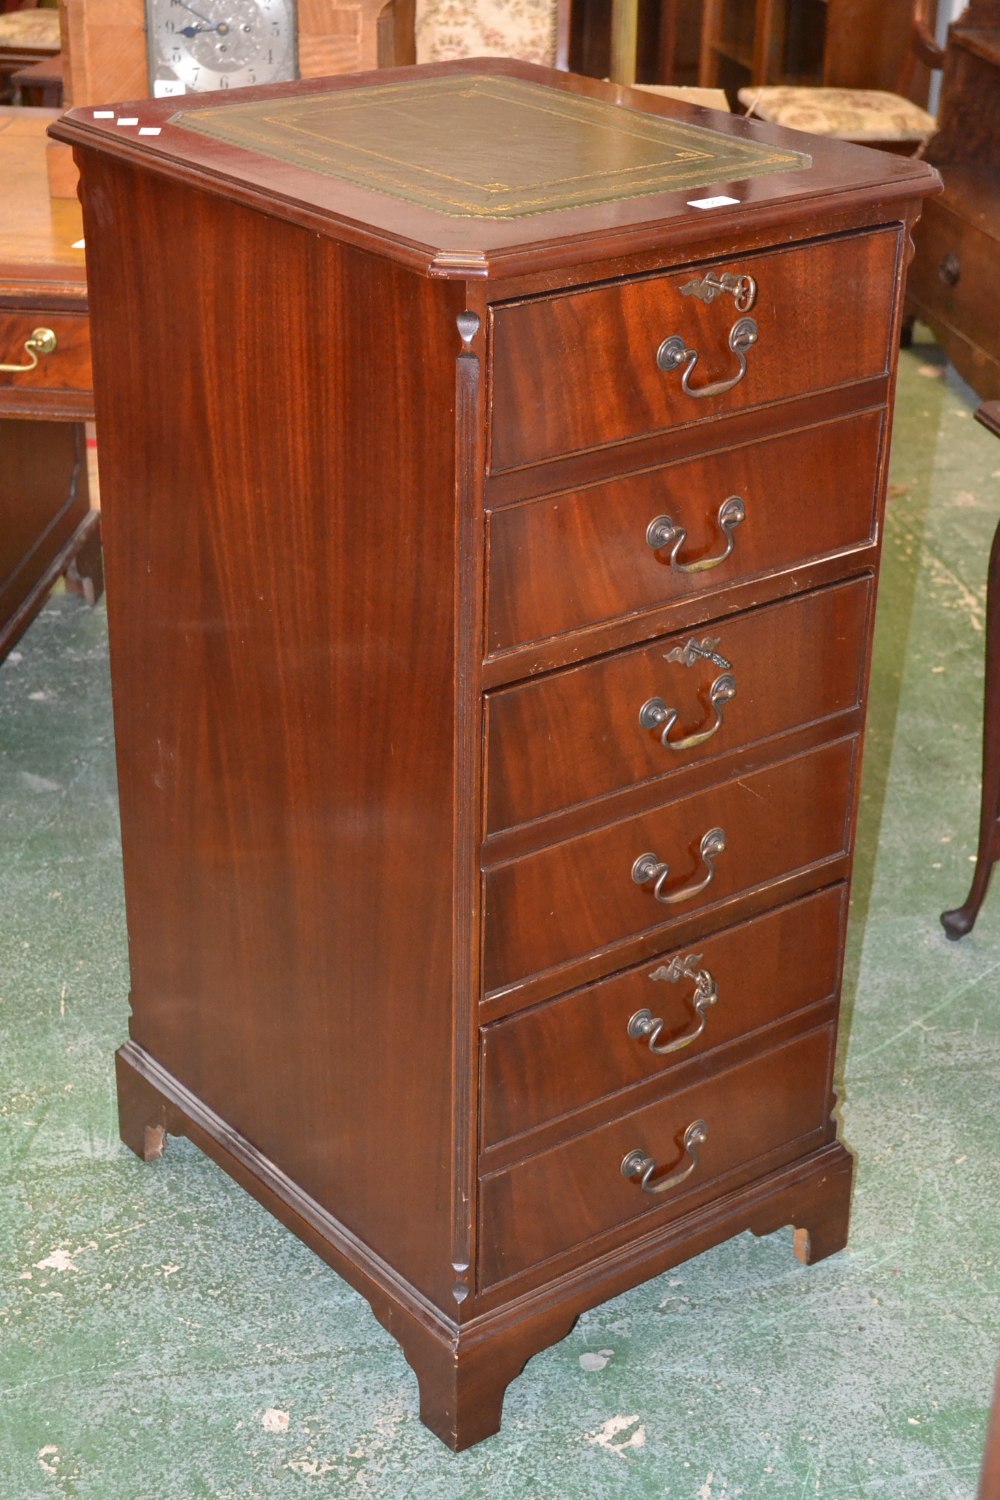 A reproduction mahogany filing cabinet